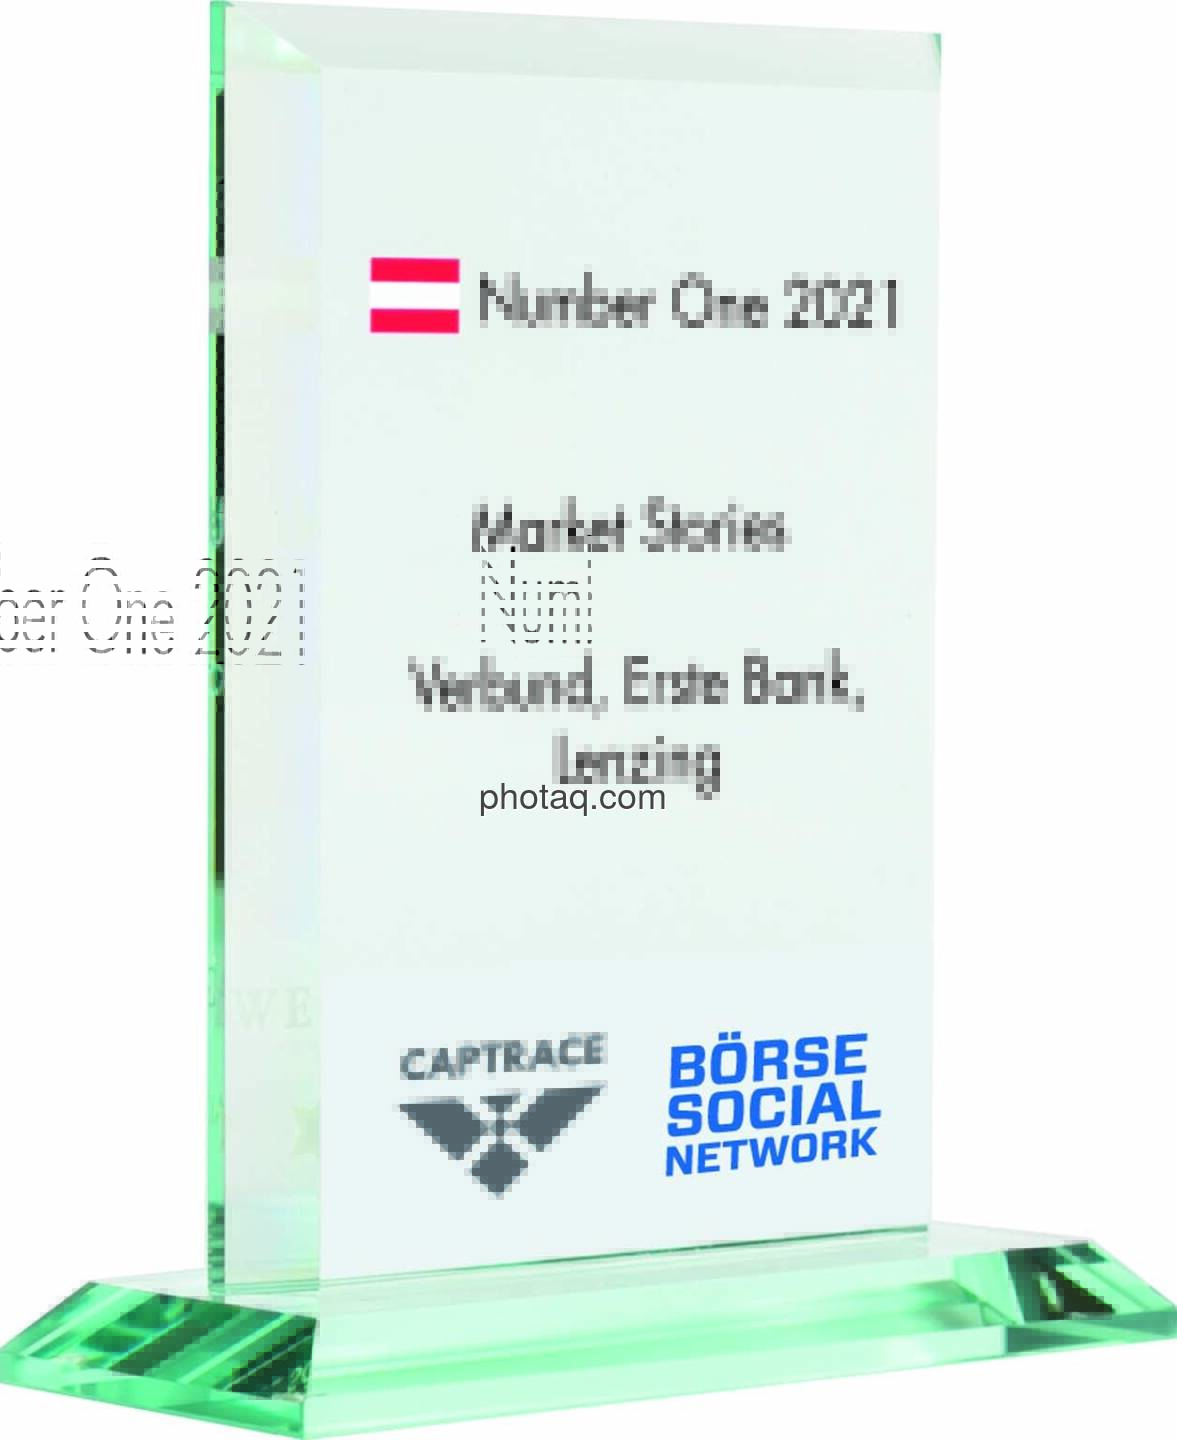 Number One Awards 2021 - Market Stories Verbund, Erste Bank, Lenzing